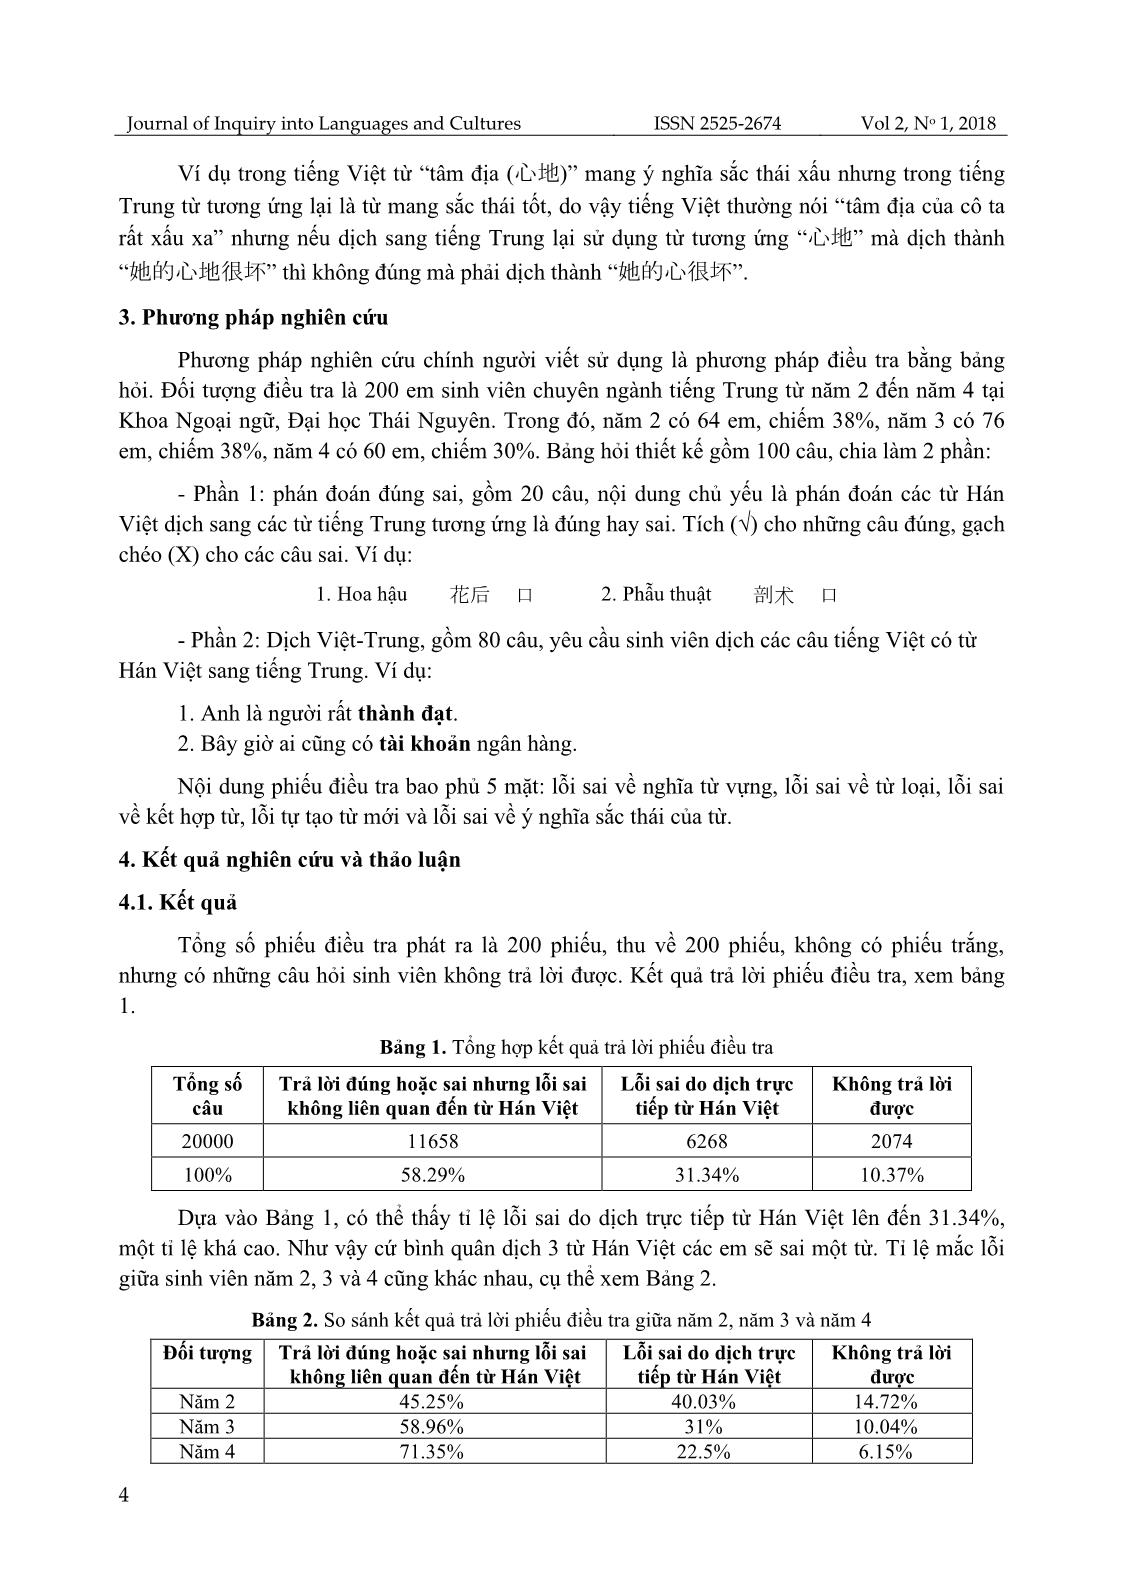 Khảo sát lỗi sai của sinh viên khoa Ngoại ngữ, Đại học Thái Nguyên khi dịch trực tiếp từ Hán Việt sang tiếng Trung và giải pháp khắc phục trang 4